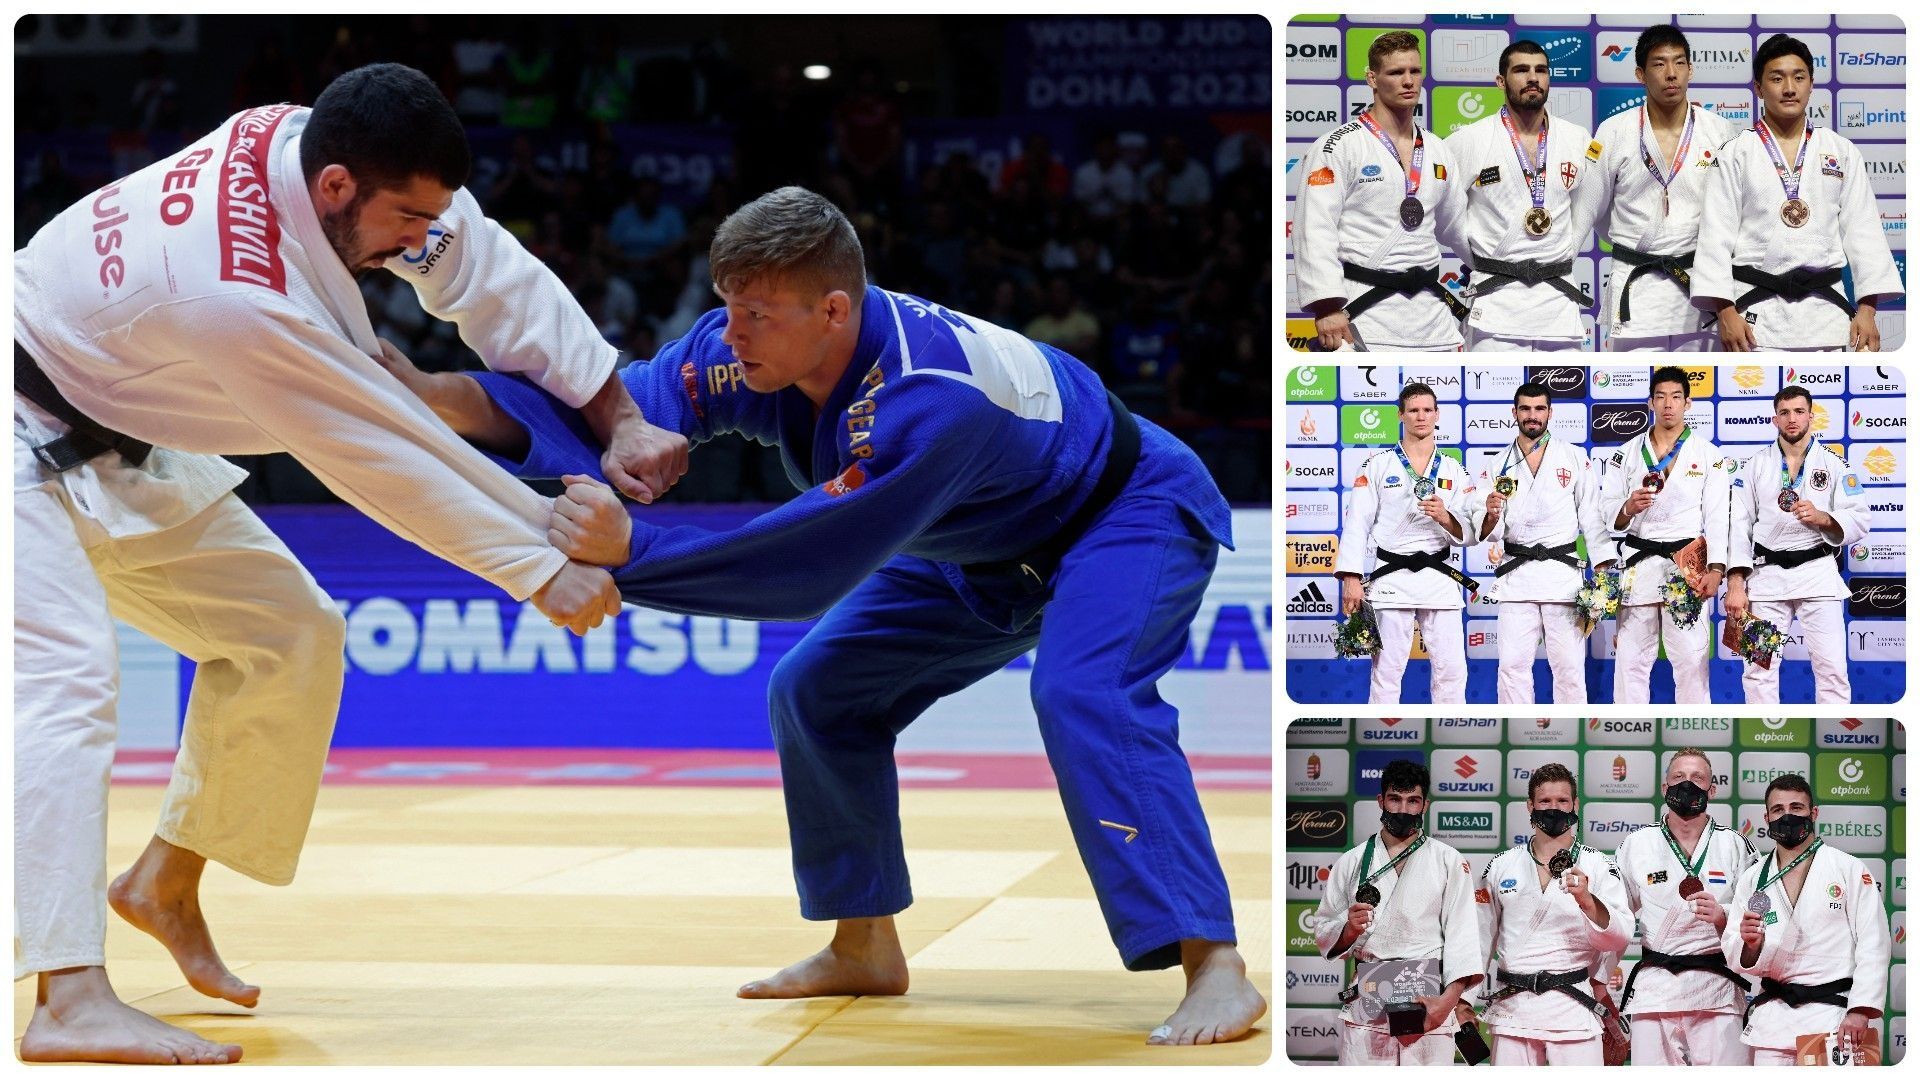 Pour la 3e année consécutive, le Belge, Matthias Casse a rencontré Tato Grigalashvili en finale des mondiaux de judo